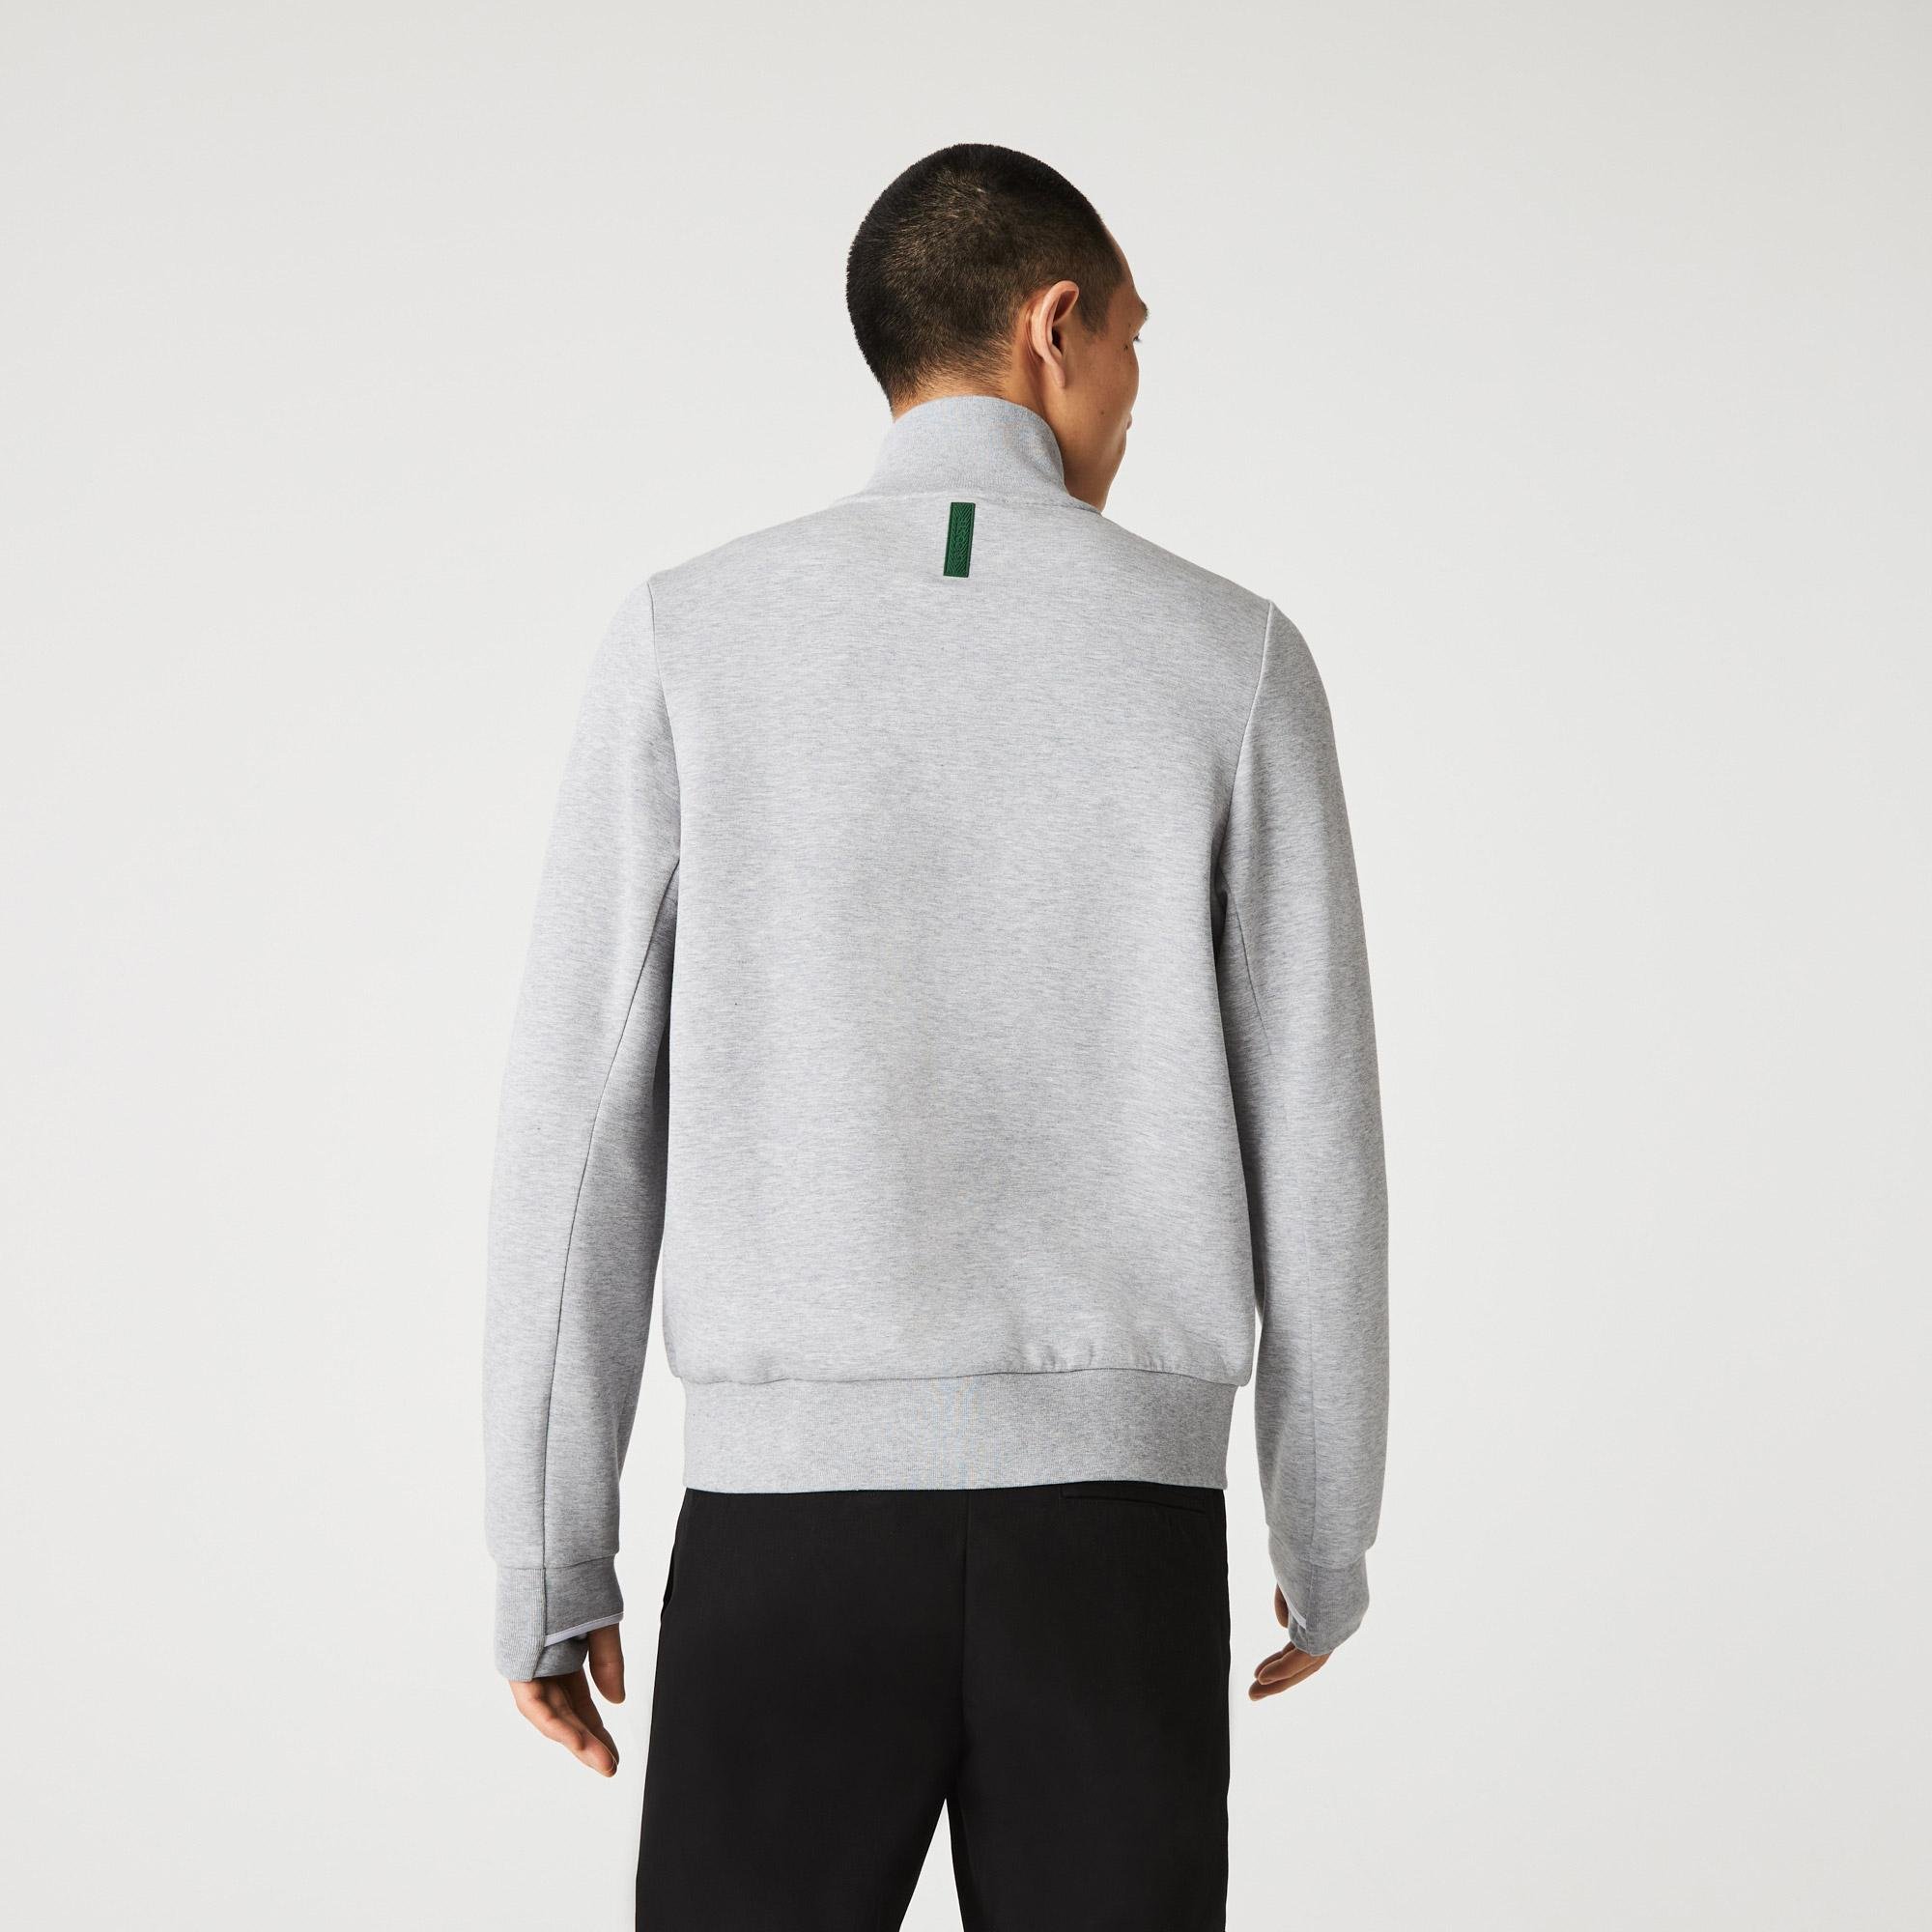 Lacoste Men’s High Neck Cotton Blend Zip Sweatshirt